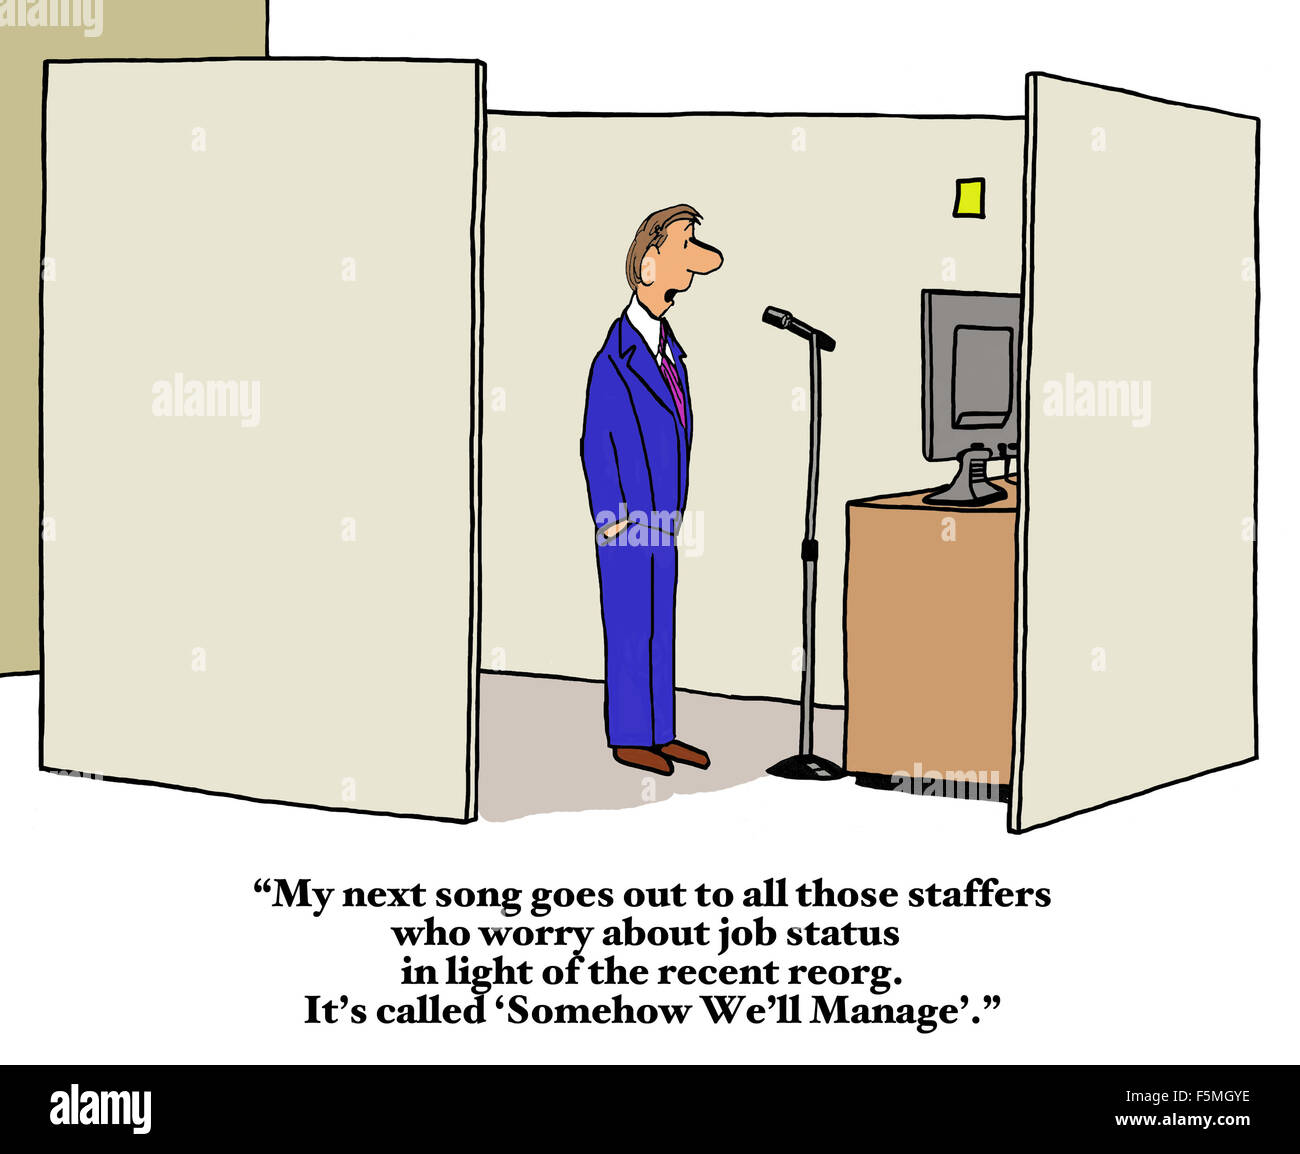 Geschäft Cartoon Geschäft sagen: "mein nächstes Lied... Mitarbeitern, die über Auftragsstatus... Reorg sorgen... "Irgendwie werden wir Manager". Stockfoto